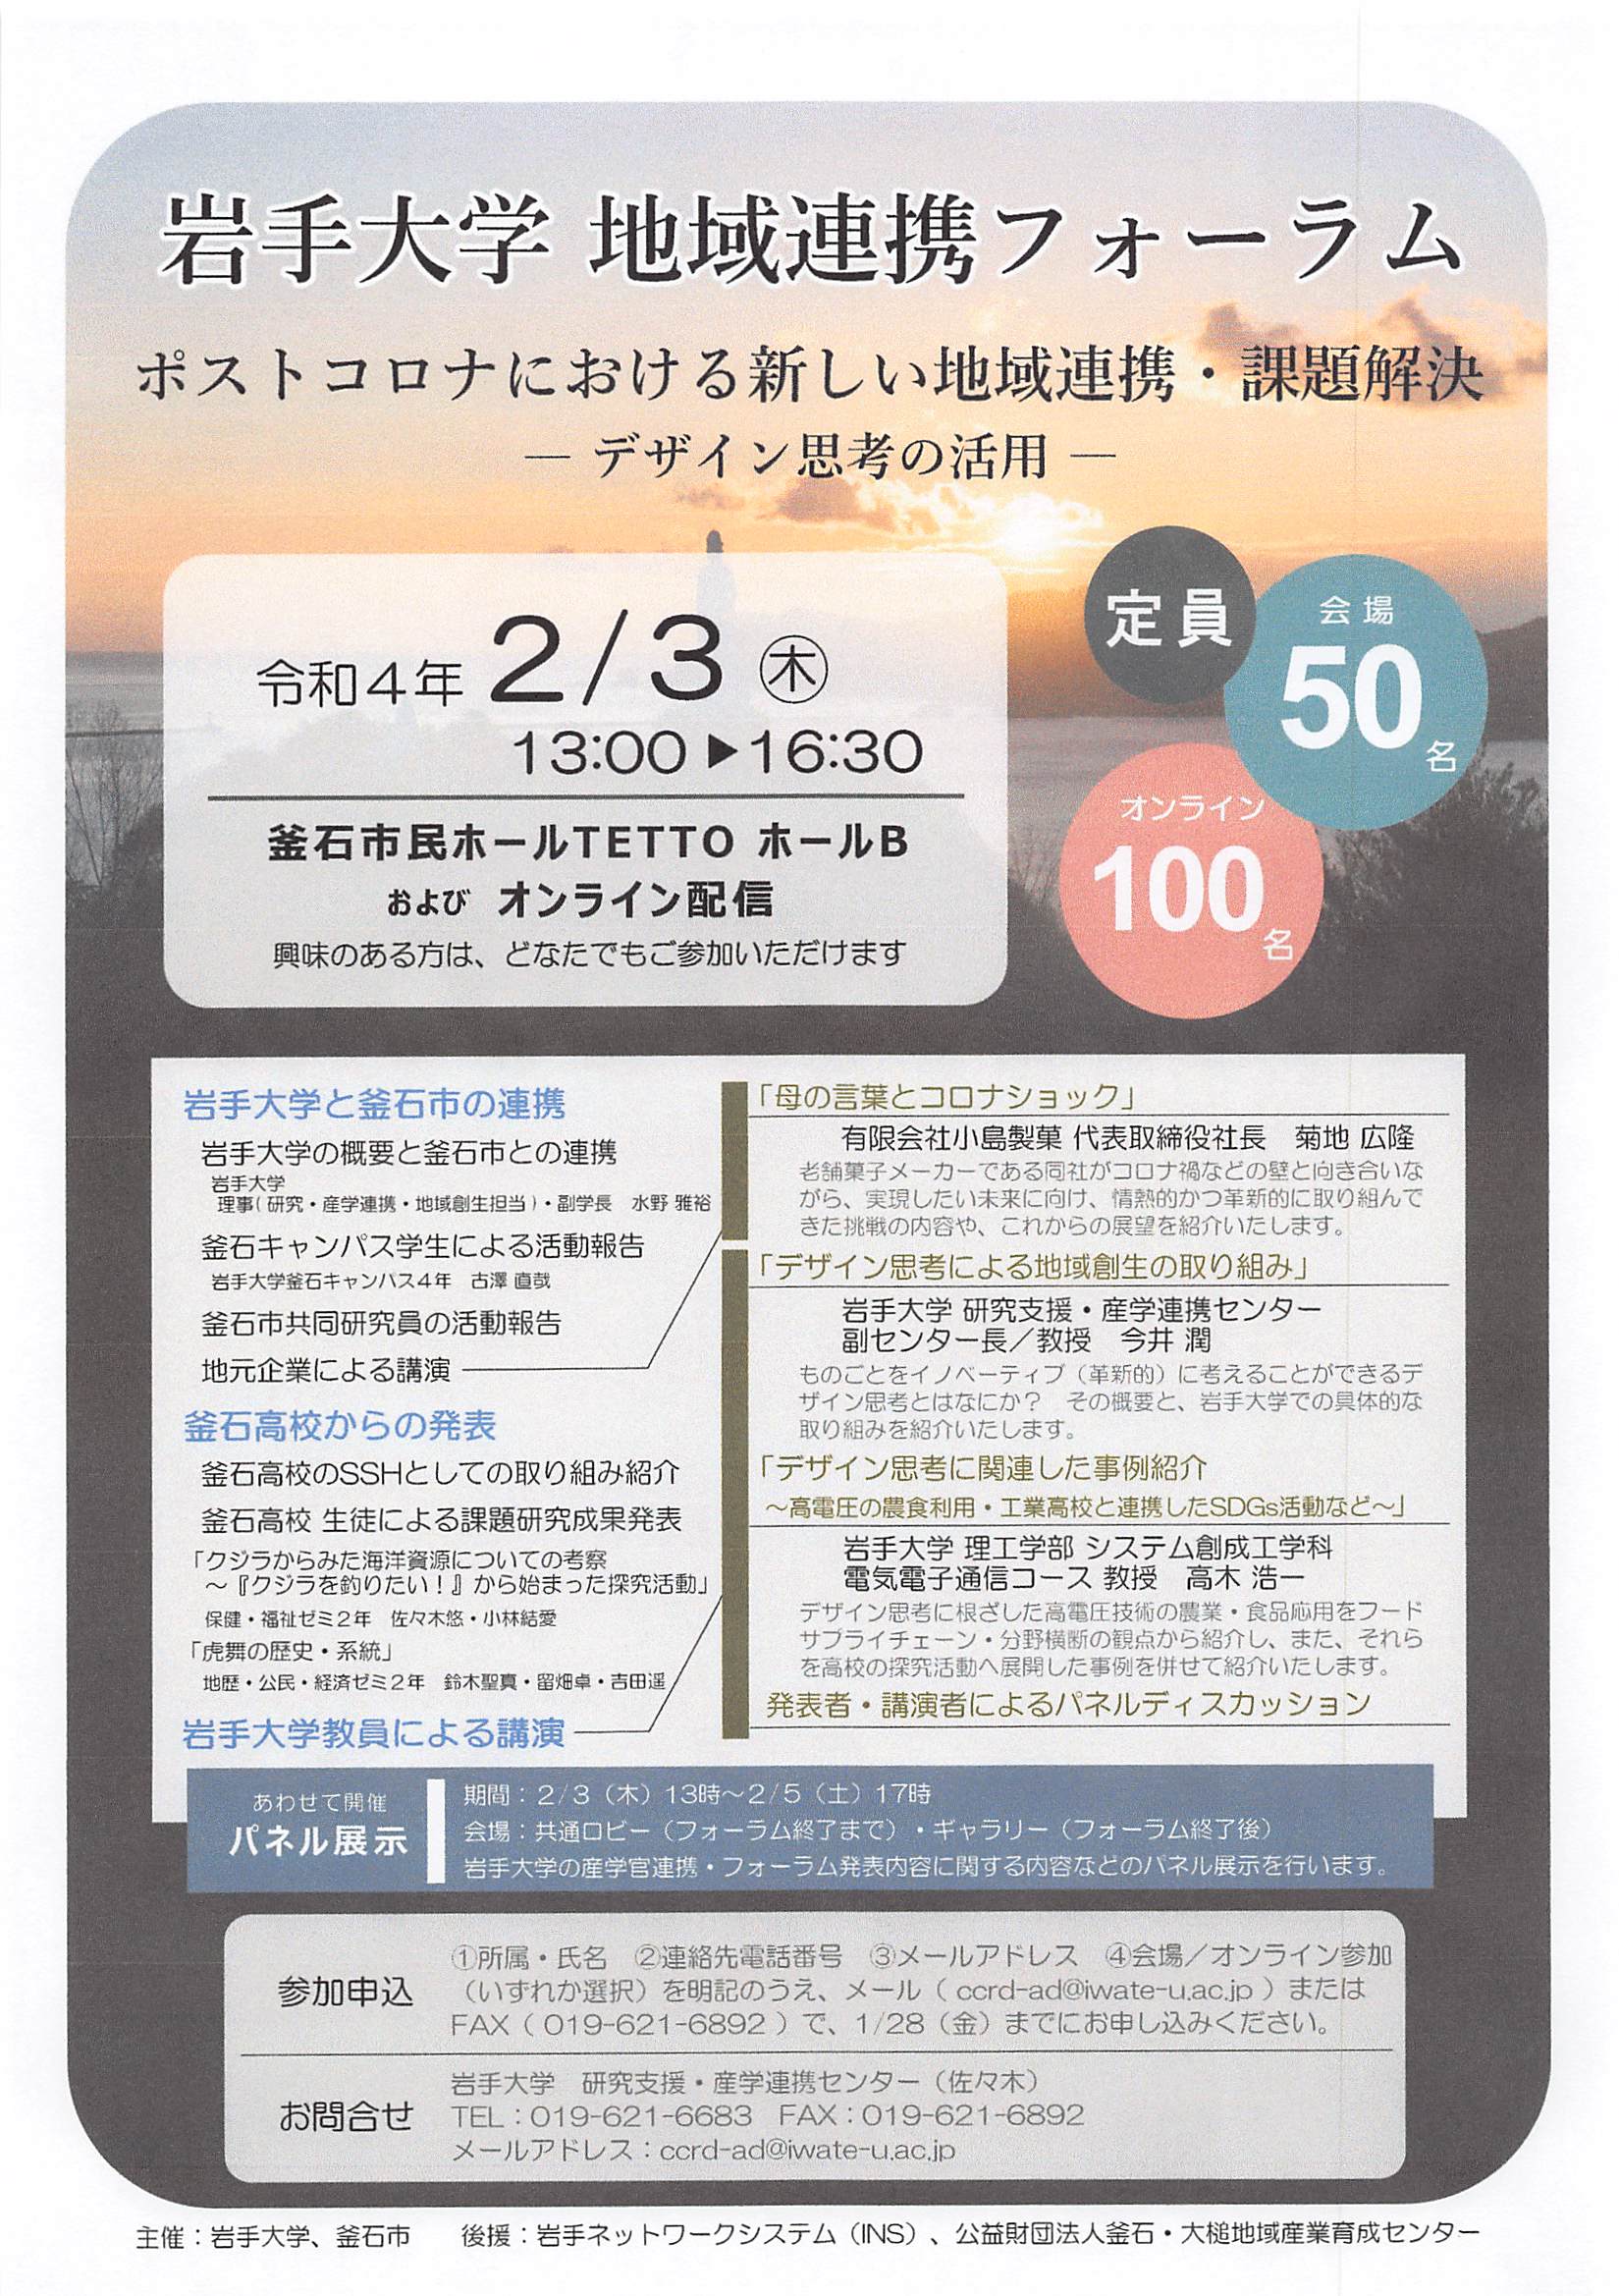 【イベント】岩手大学地域連携フォーラムin釜石